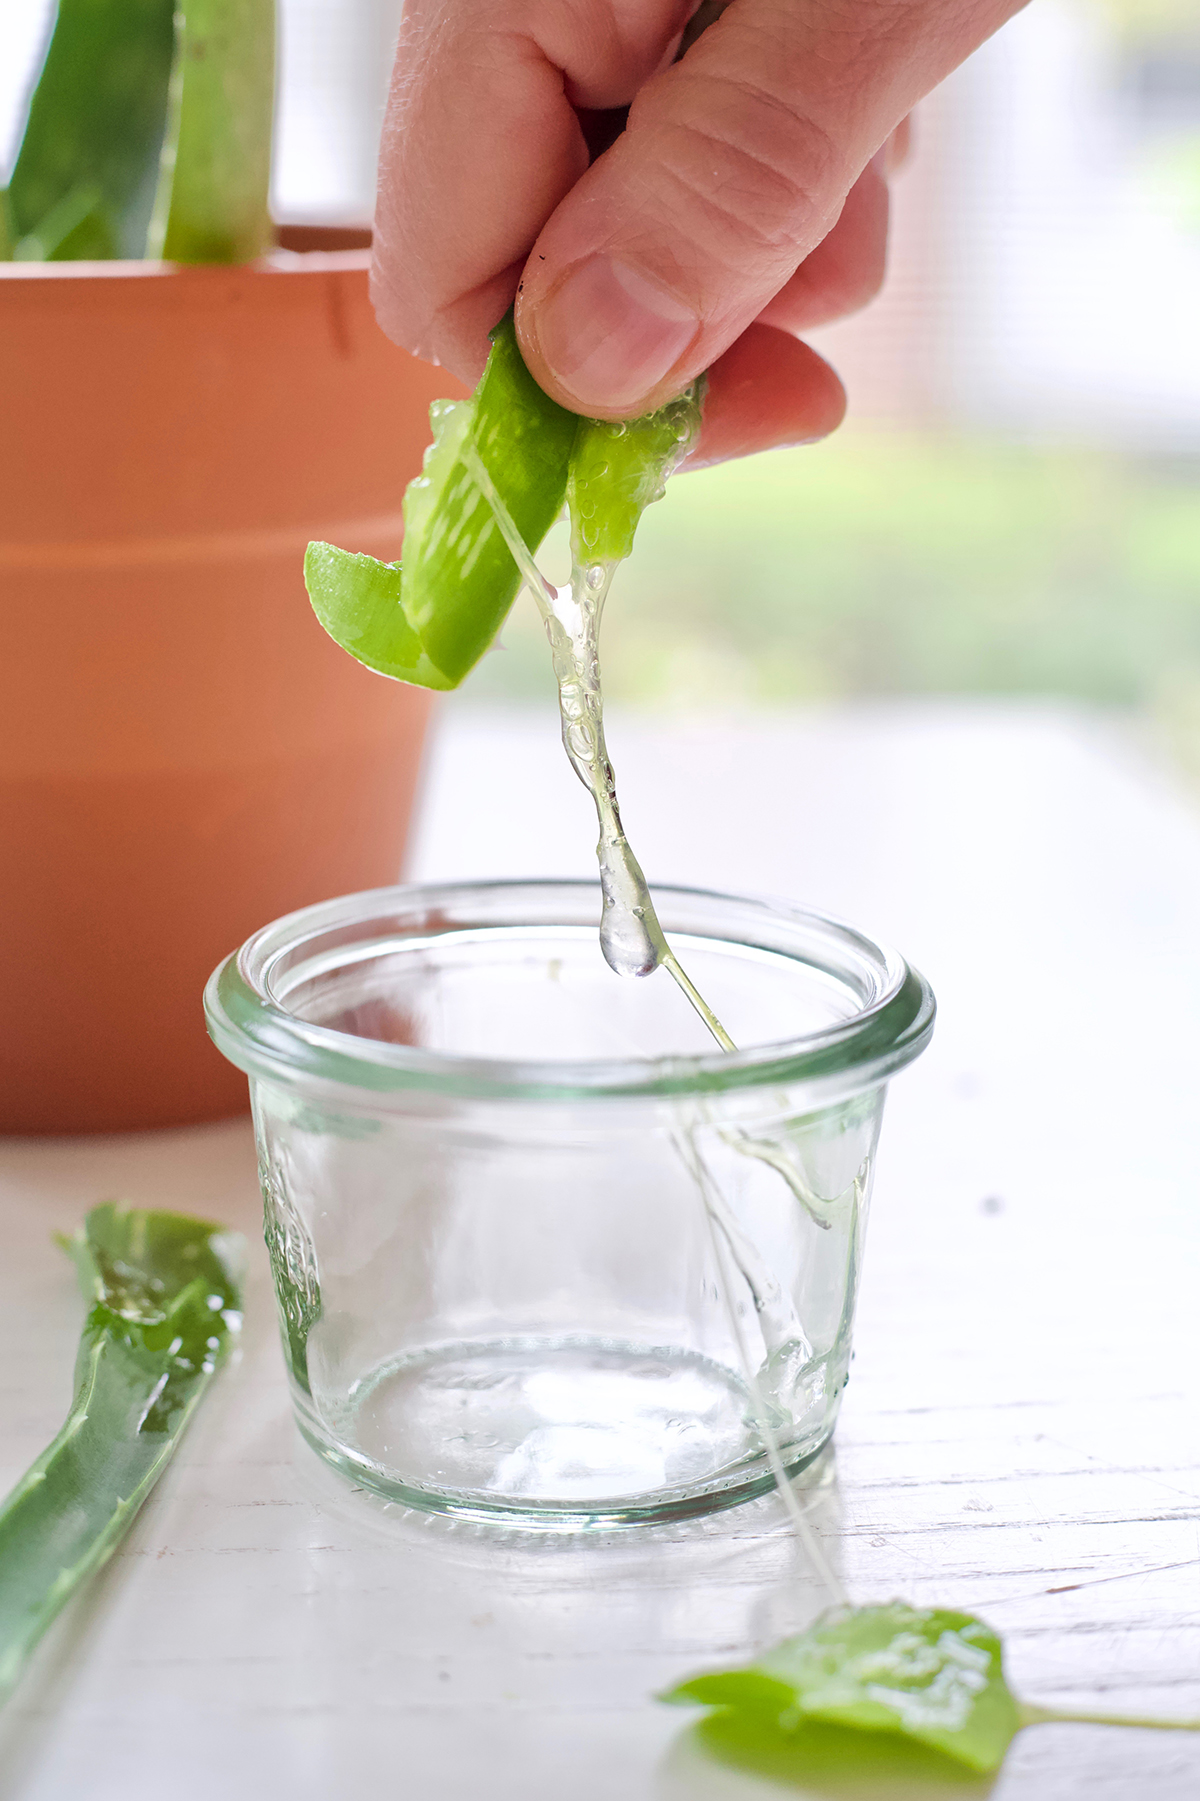 squeezing aloe vera into a jar